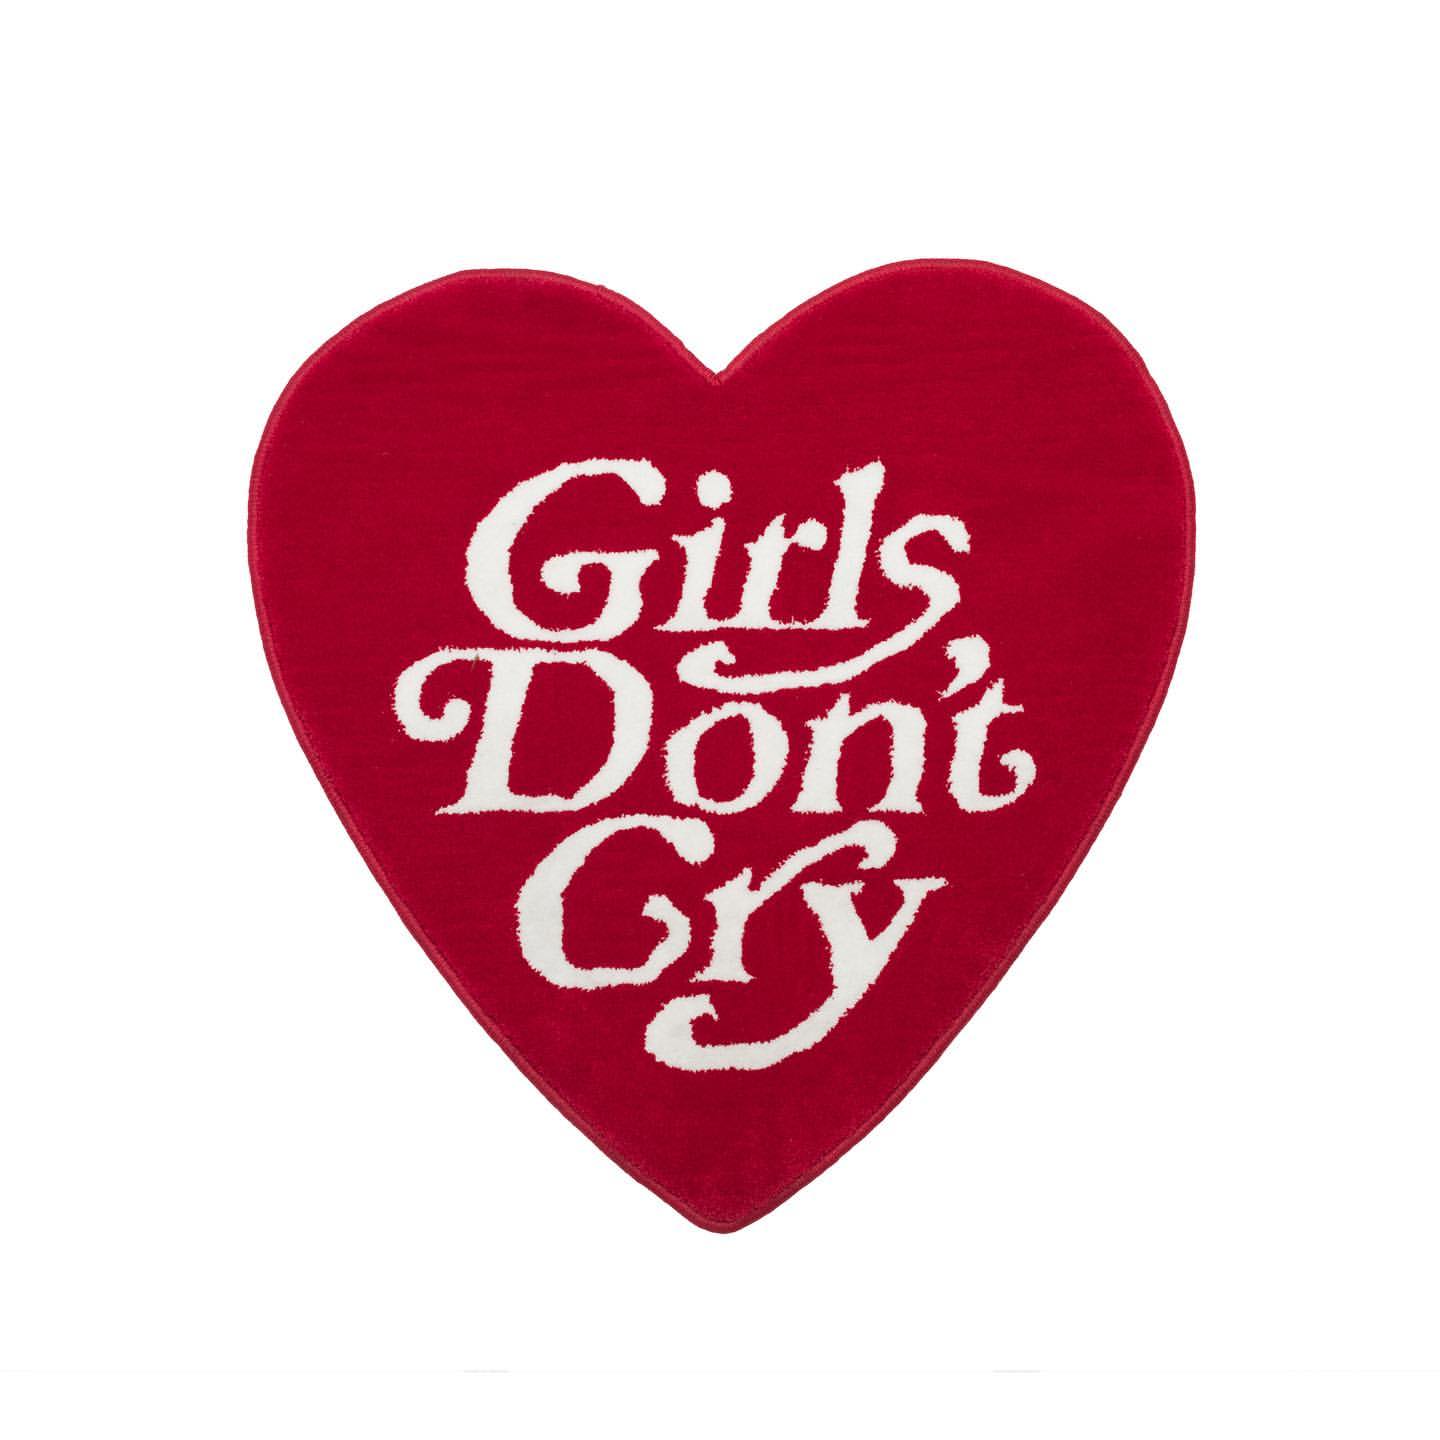 販売開始はいつ!? 「Girls Don't Cry 2019 Fall」新作コレクションがリリース！2019年9月19日